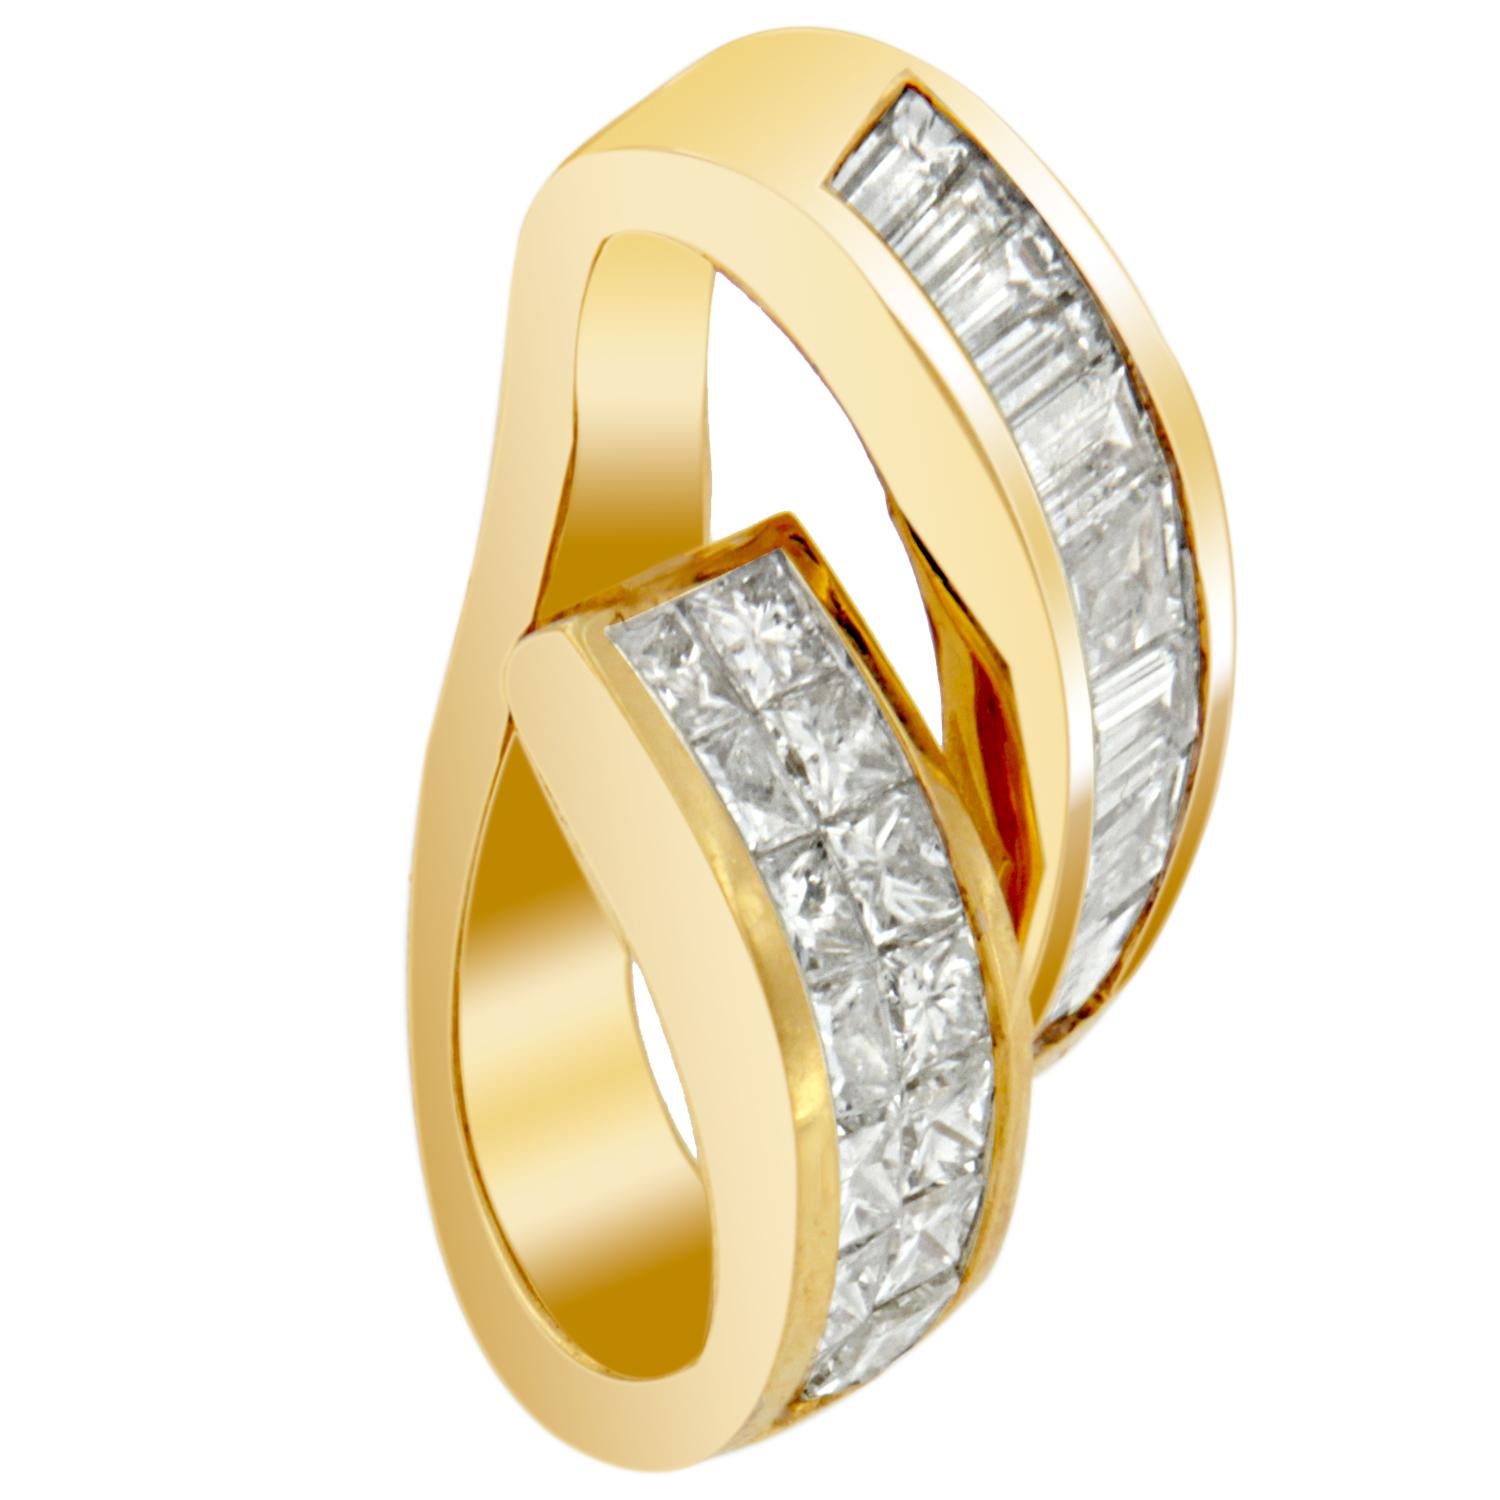 Baguette Cut 14K Yellow Gold 1 5/8 Carat Princess & Baguette Diamond Fashion Pendant Necklace For Sale